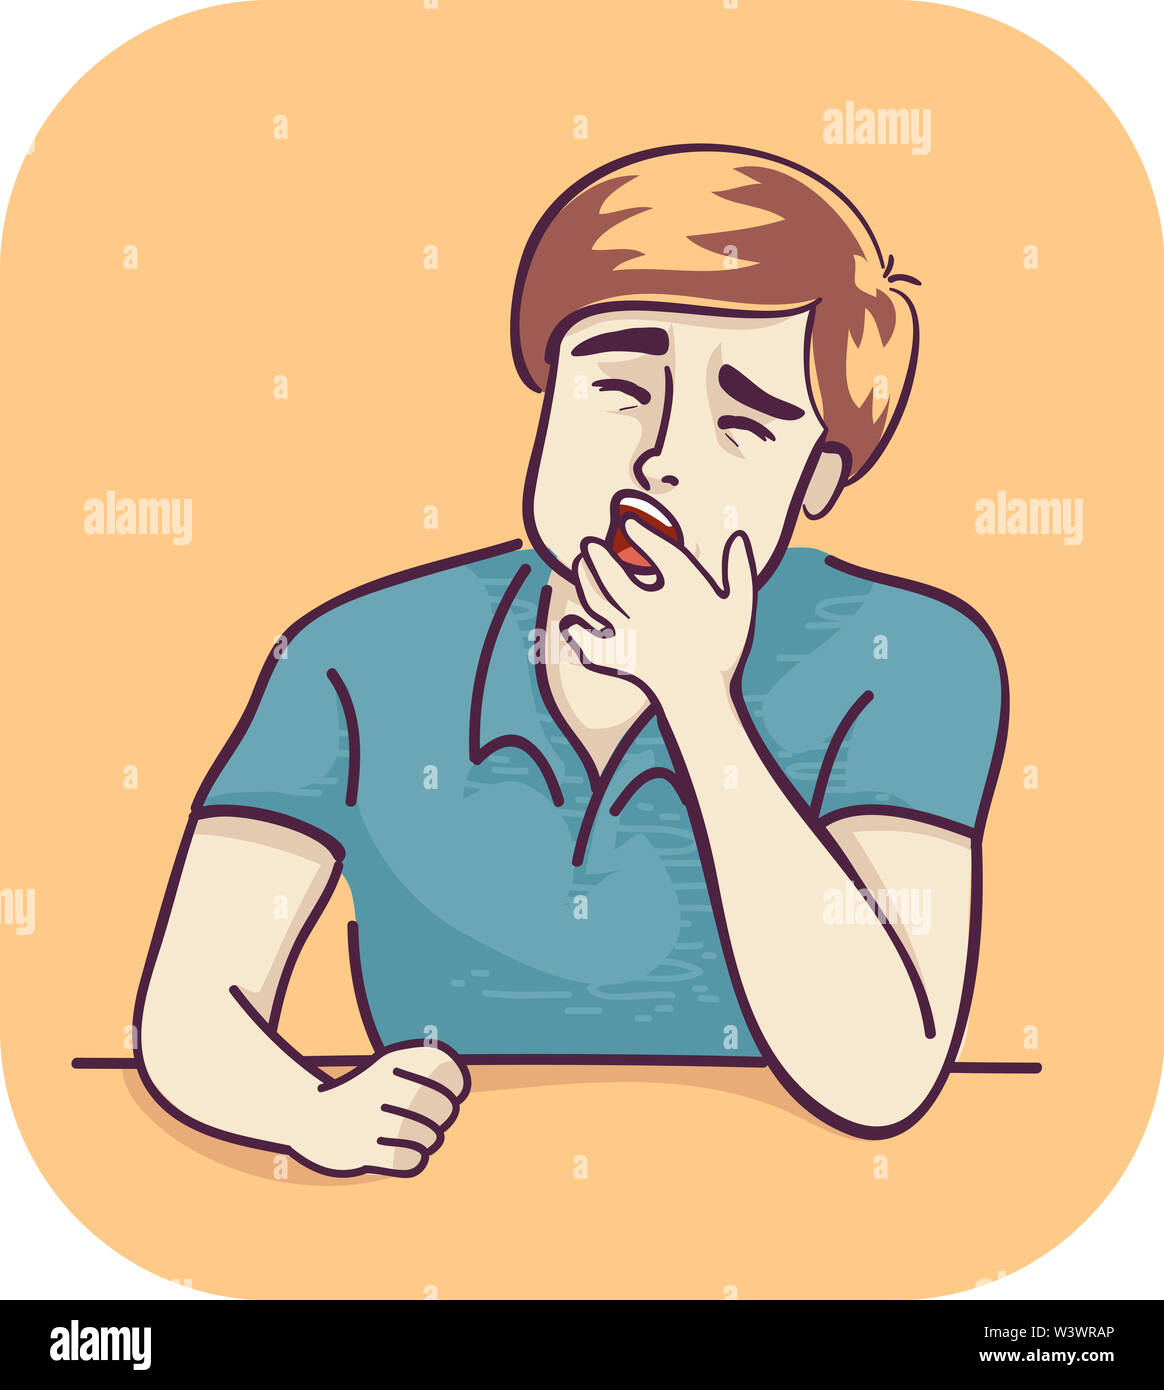 Illustration of a Yawning Man Feeling Sleepy Stock Photo